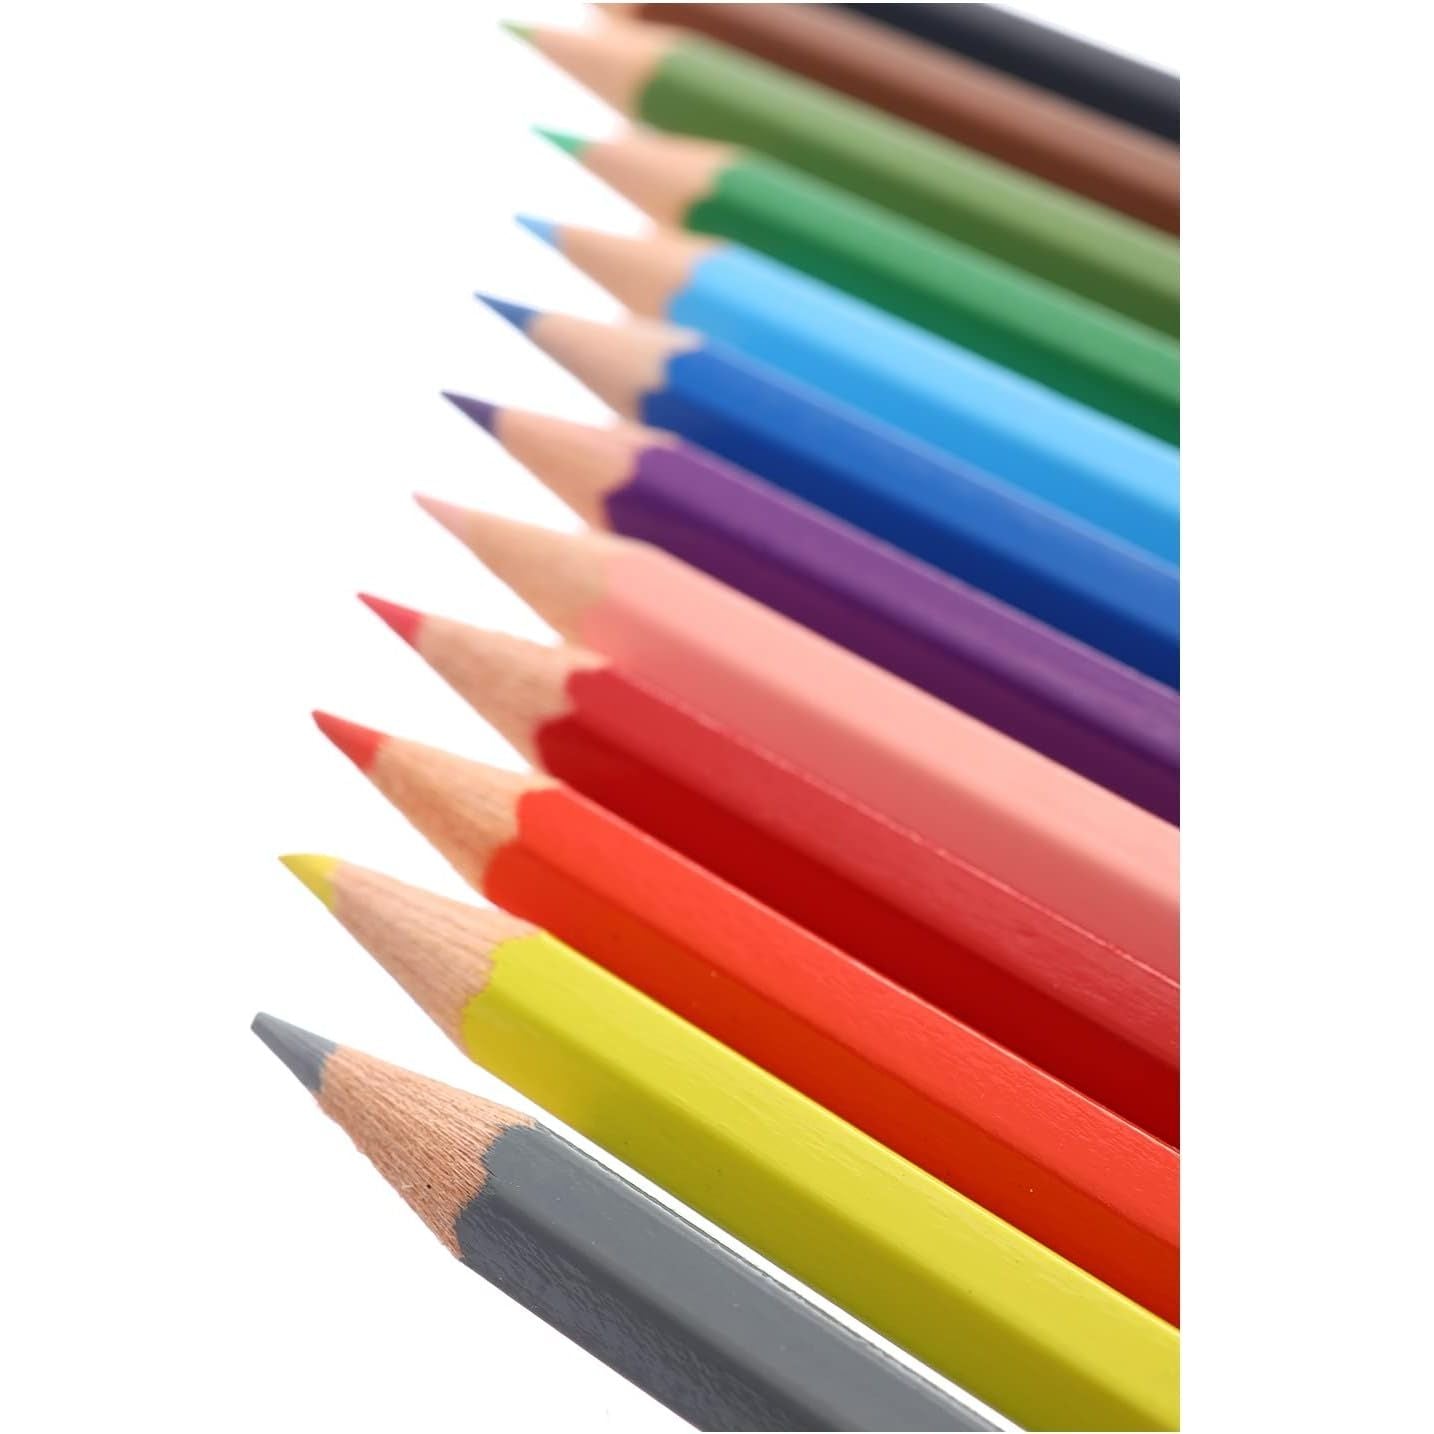 Faber Castell Wood Long Buntstifte Color Pencils 48 Color Pencils - Multi Color